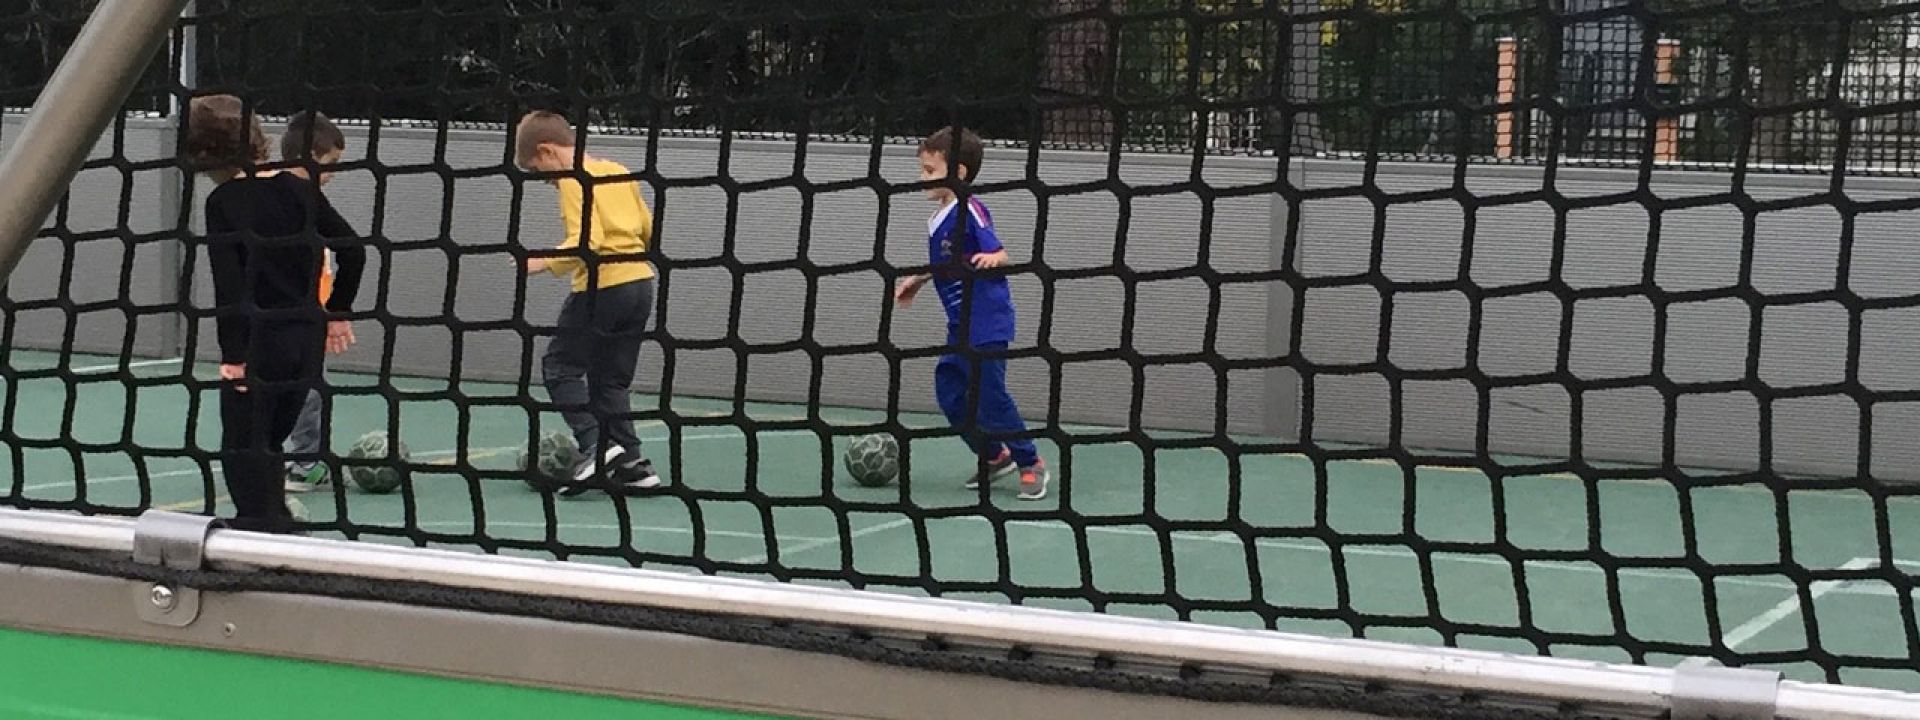 Φωτογραφία από παιδιά που παίζουν ποδόσφαιρο σε ειδικά διαμορφωμένο γήπεδο του ΚΠΙΣΝ